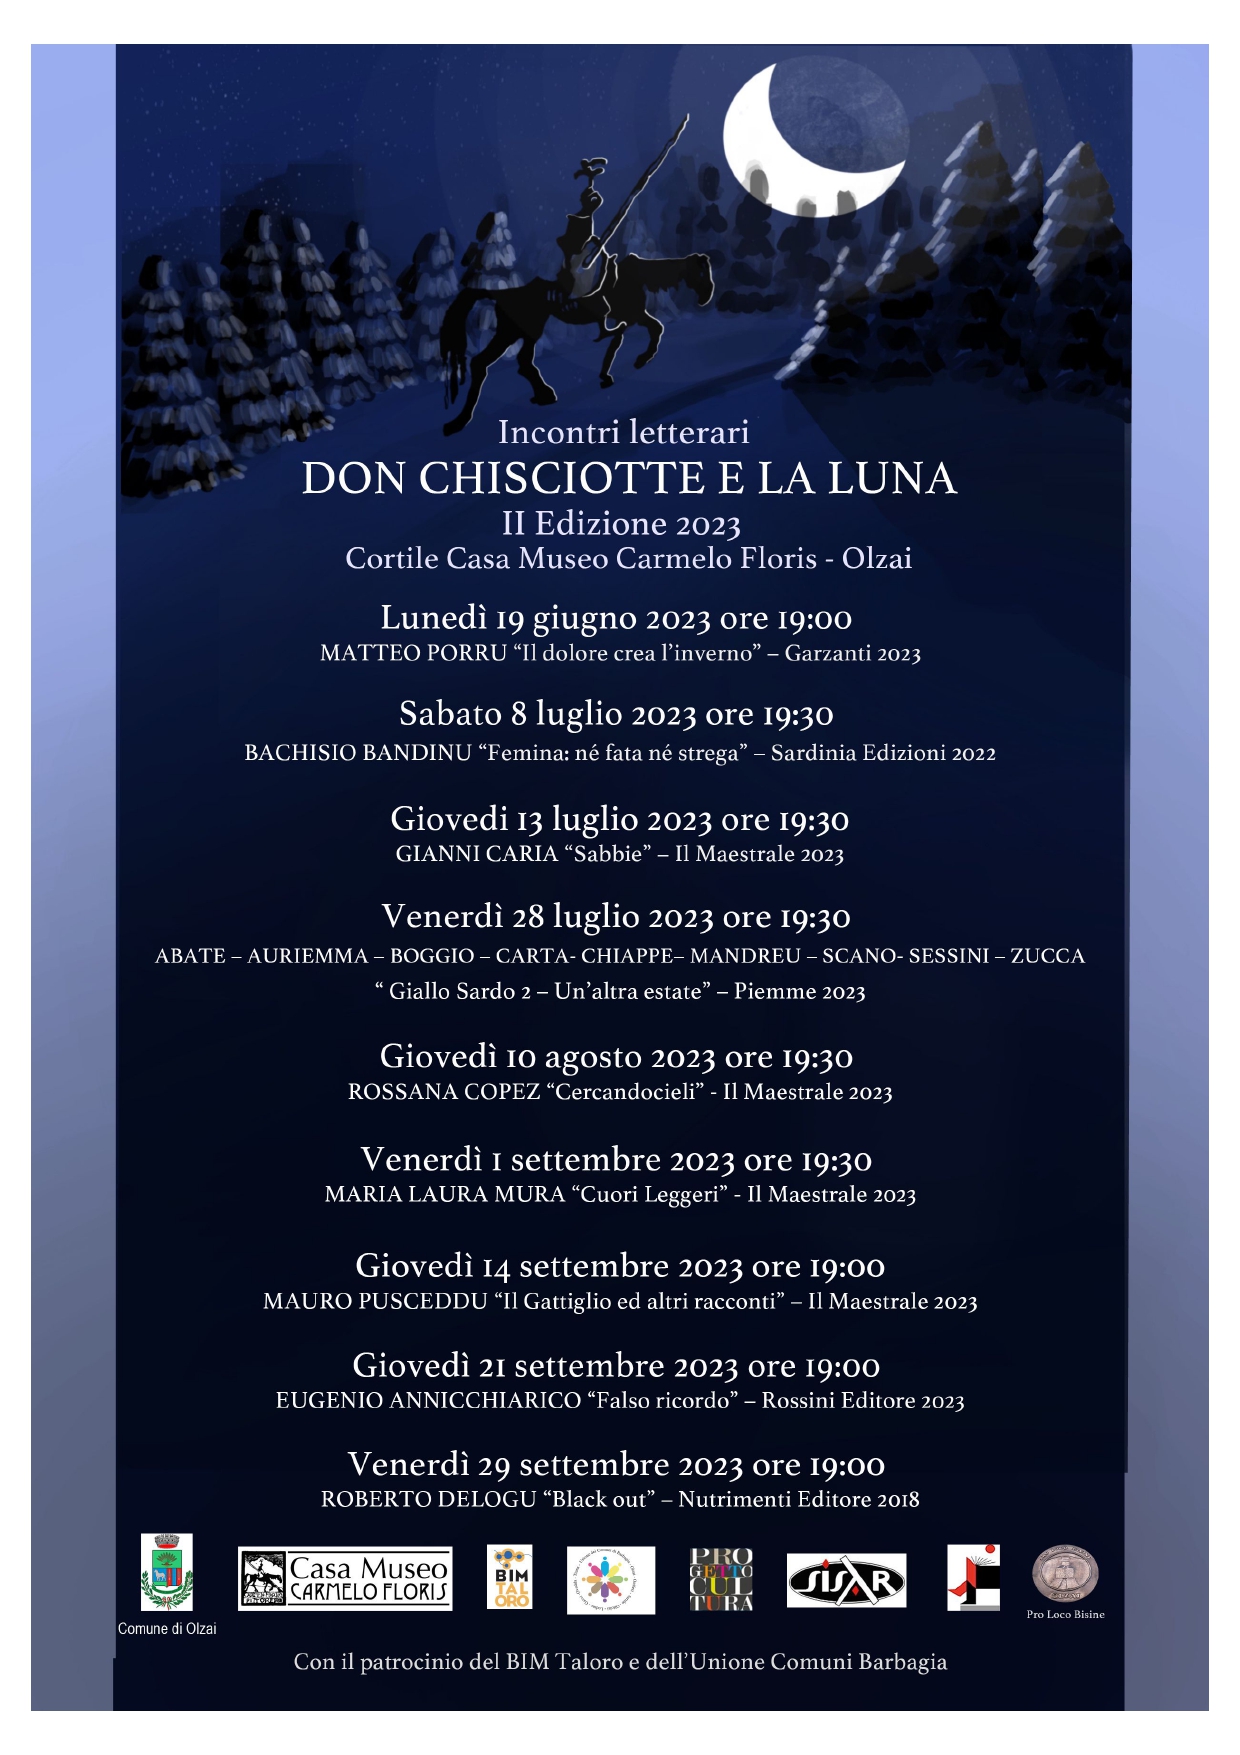 INVITO AGLI INCONTRI LETTERARI 'Don Chisciotte e la luna -II Edizione 2023'